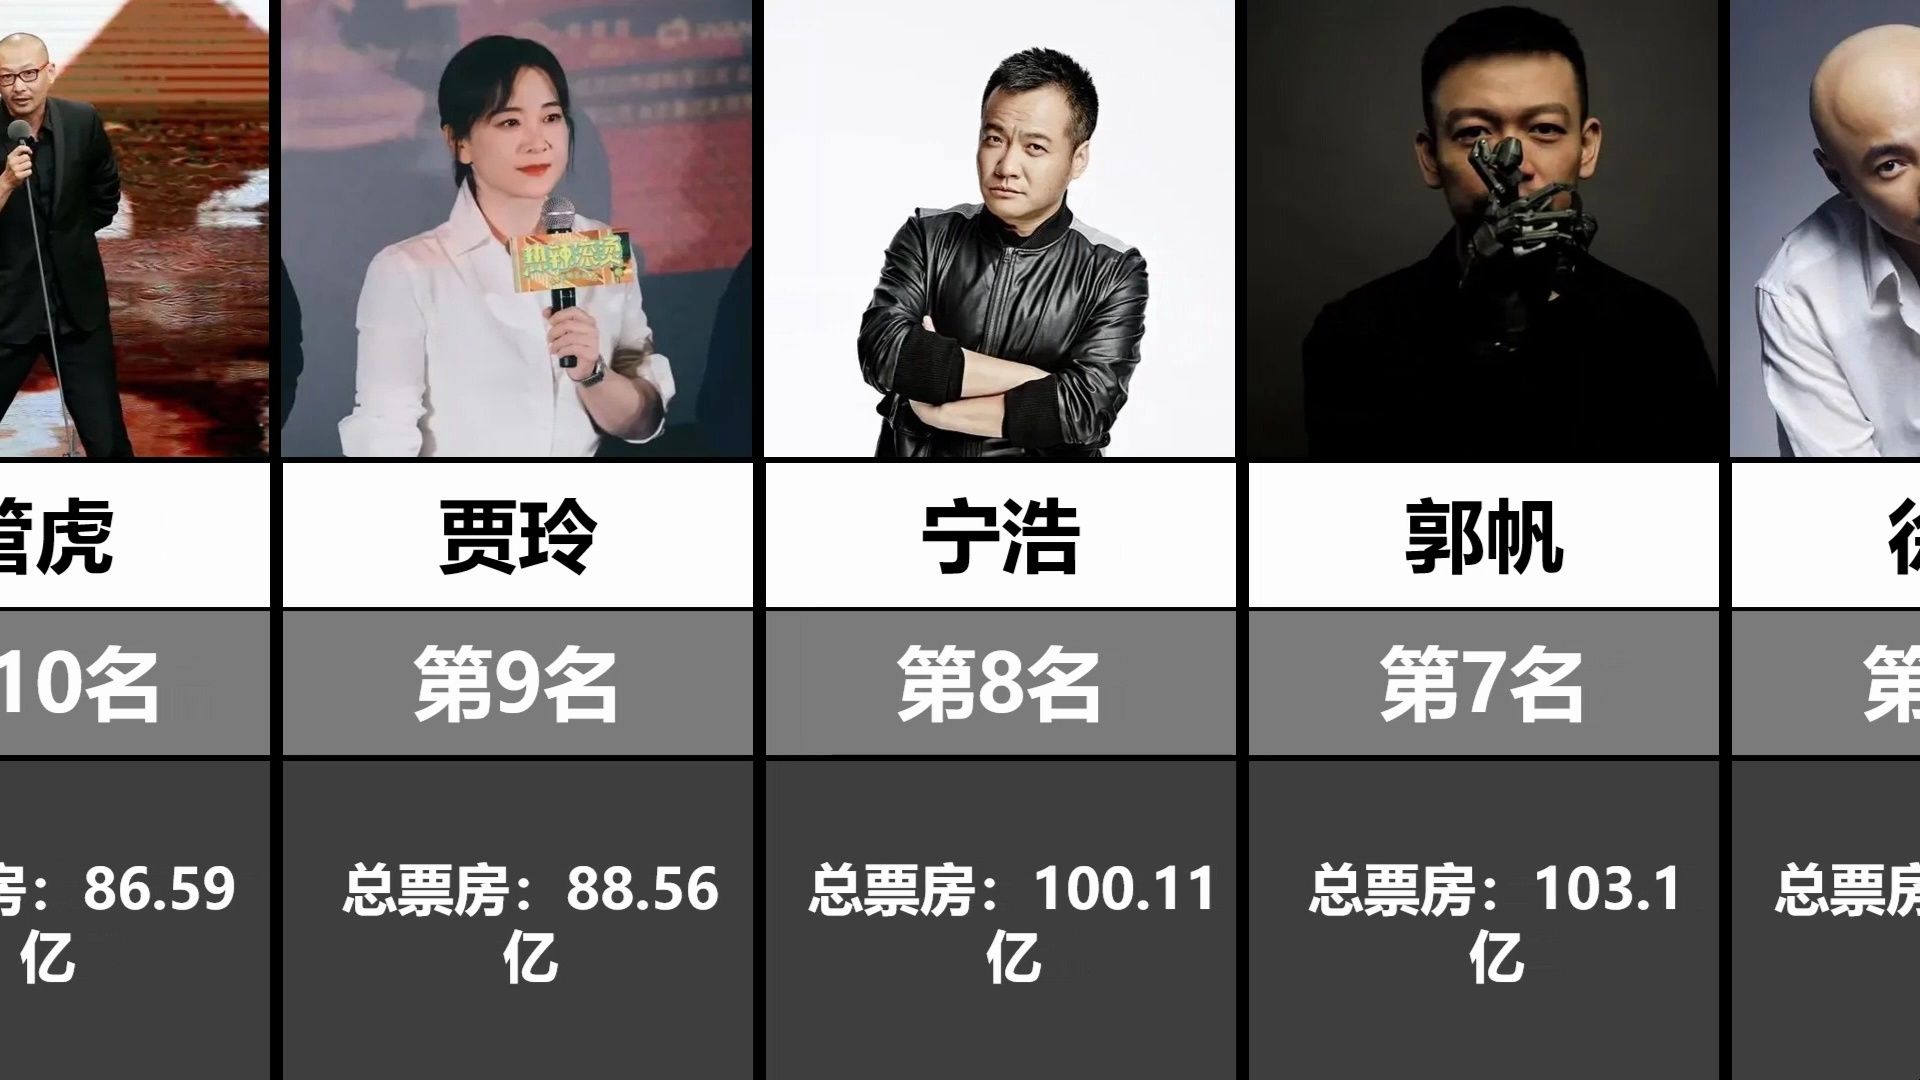 中国导演票房排行榜top20